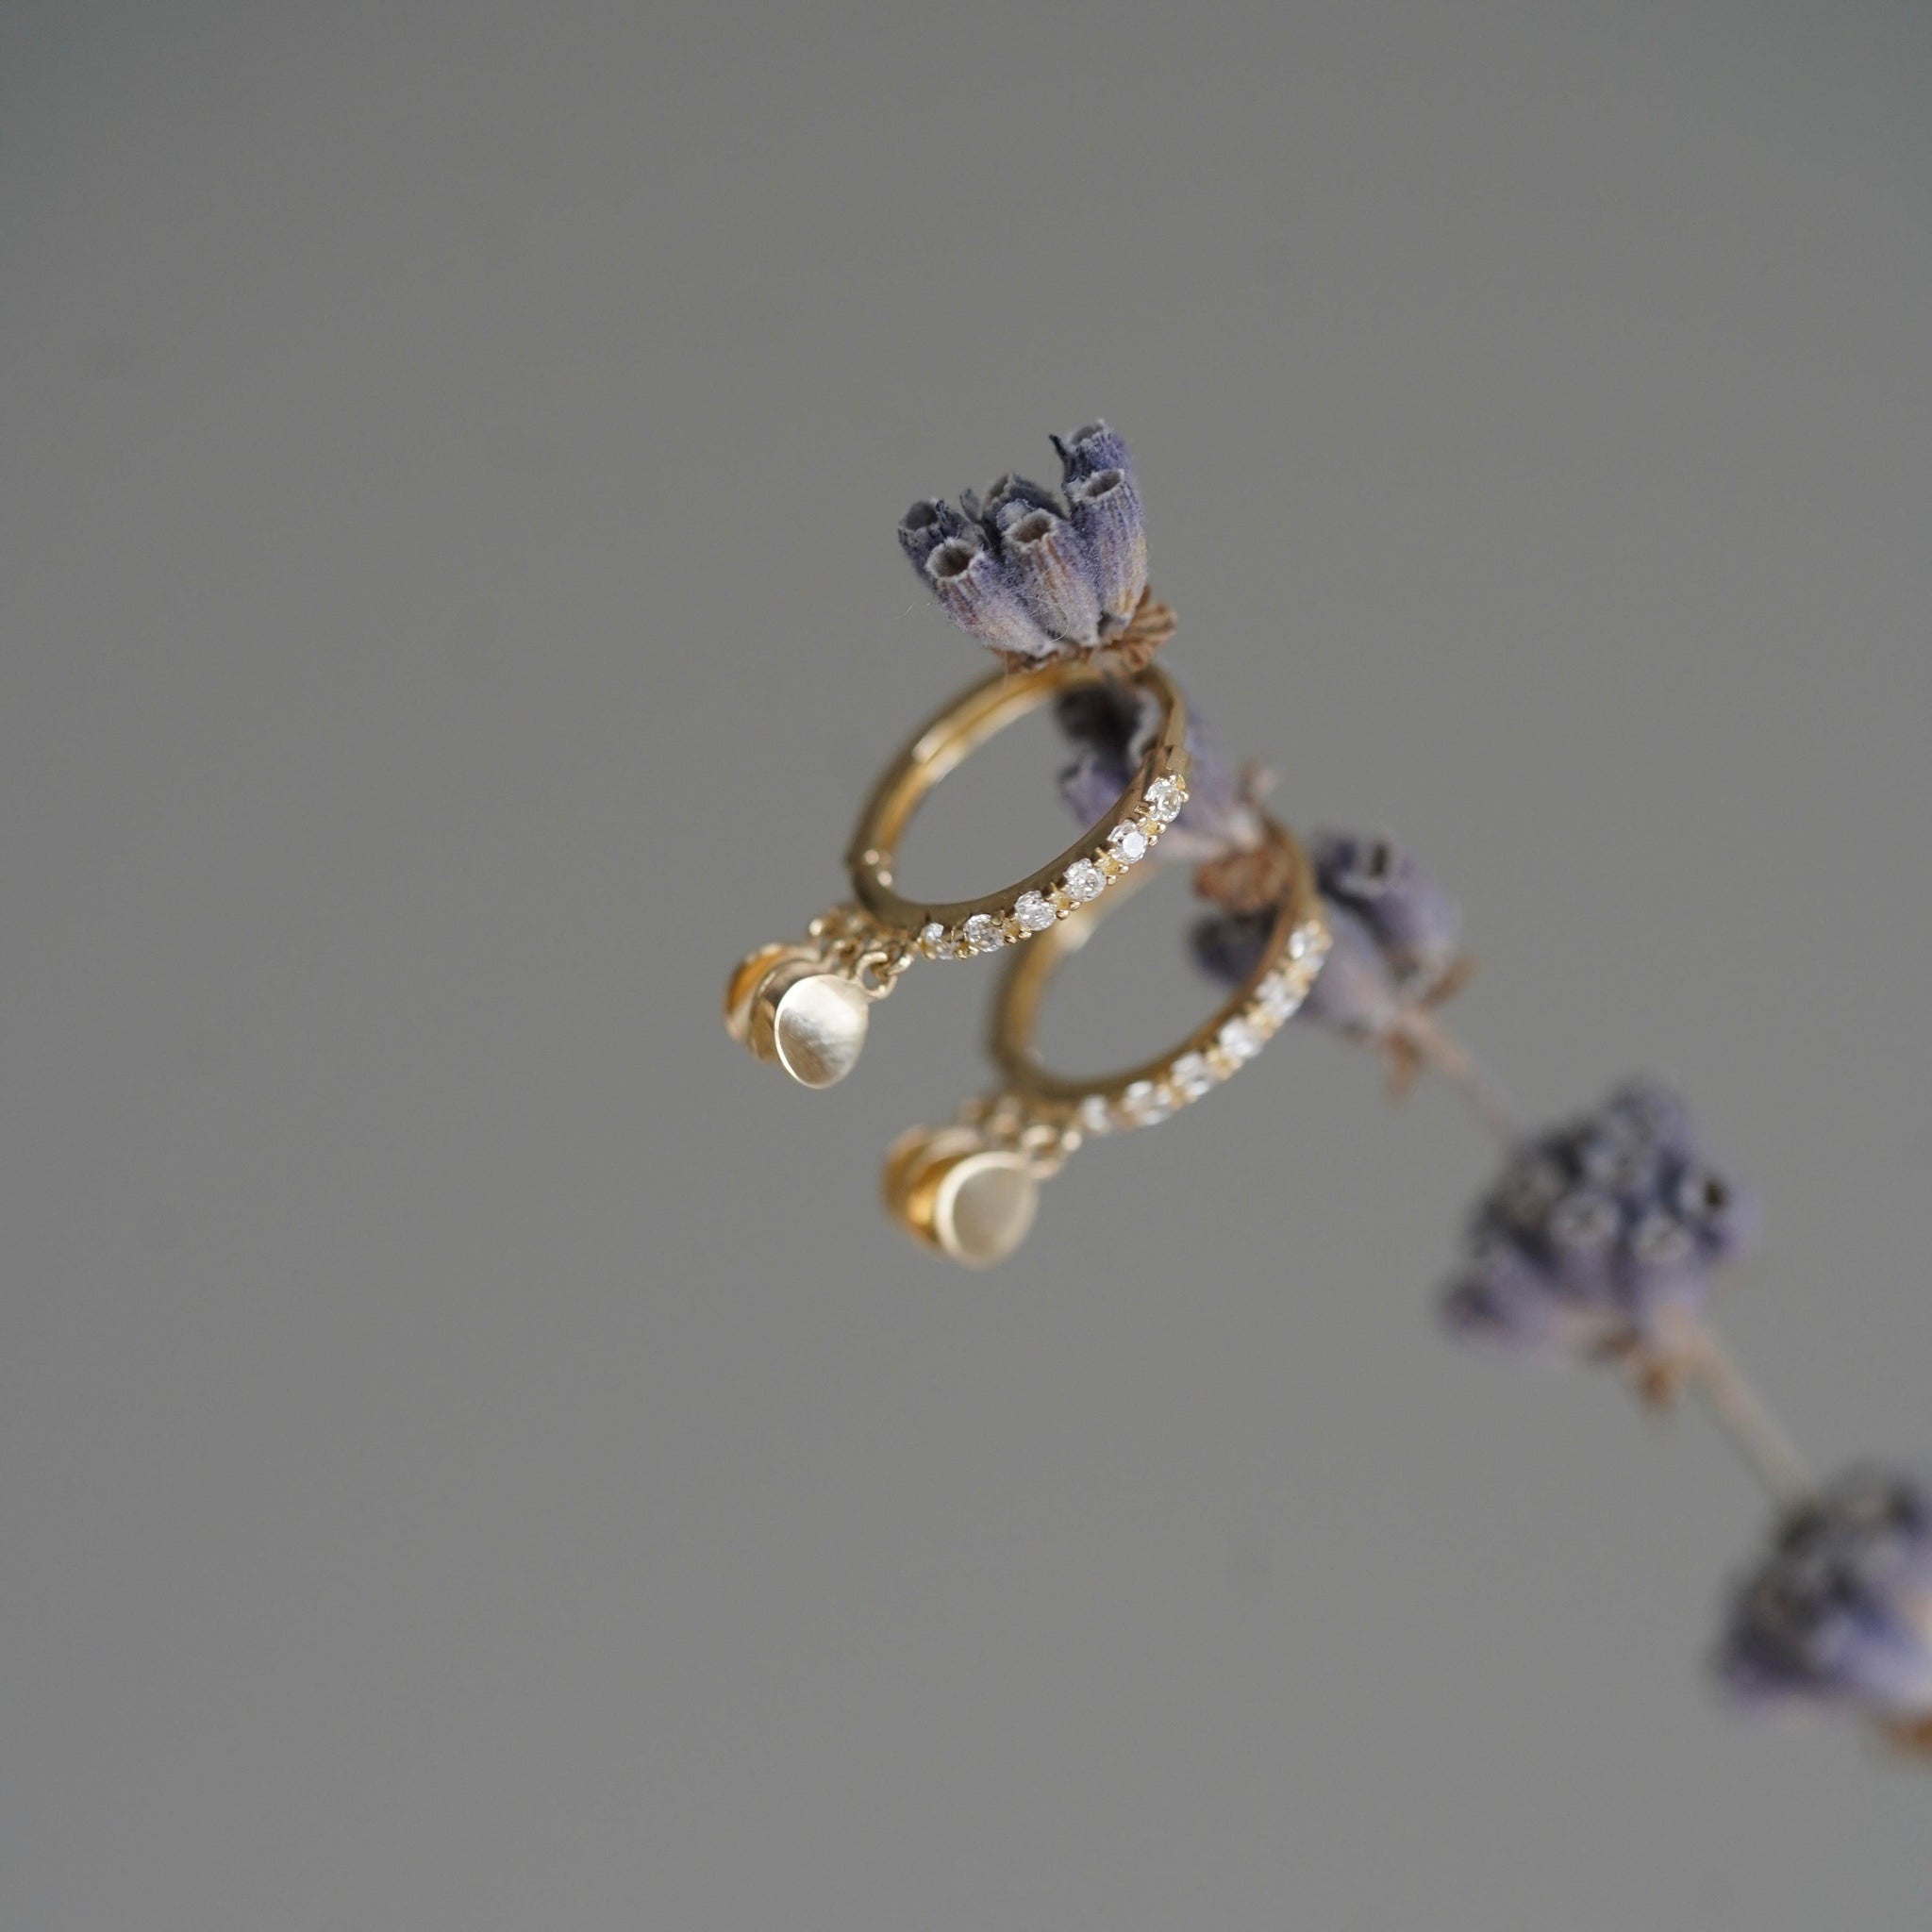 Boucles d'oreilles 9 carats avec pendentifs en forme de petites pièces de monnaie